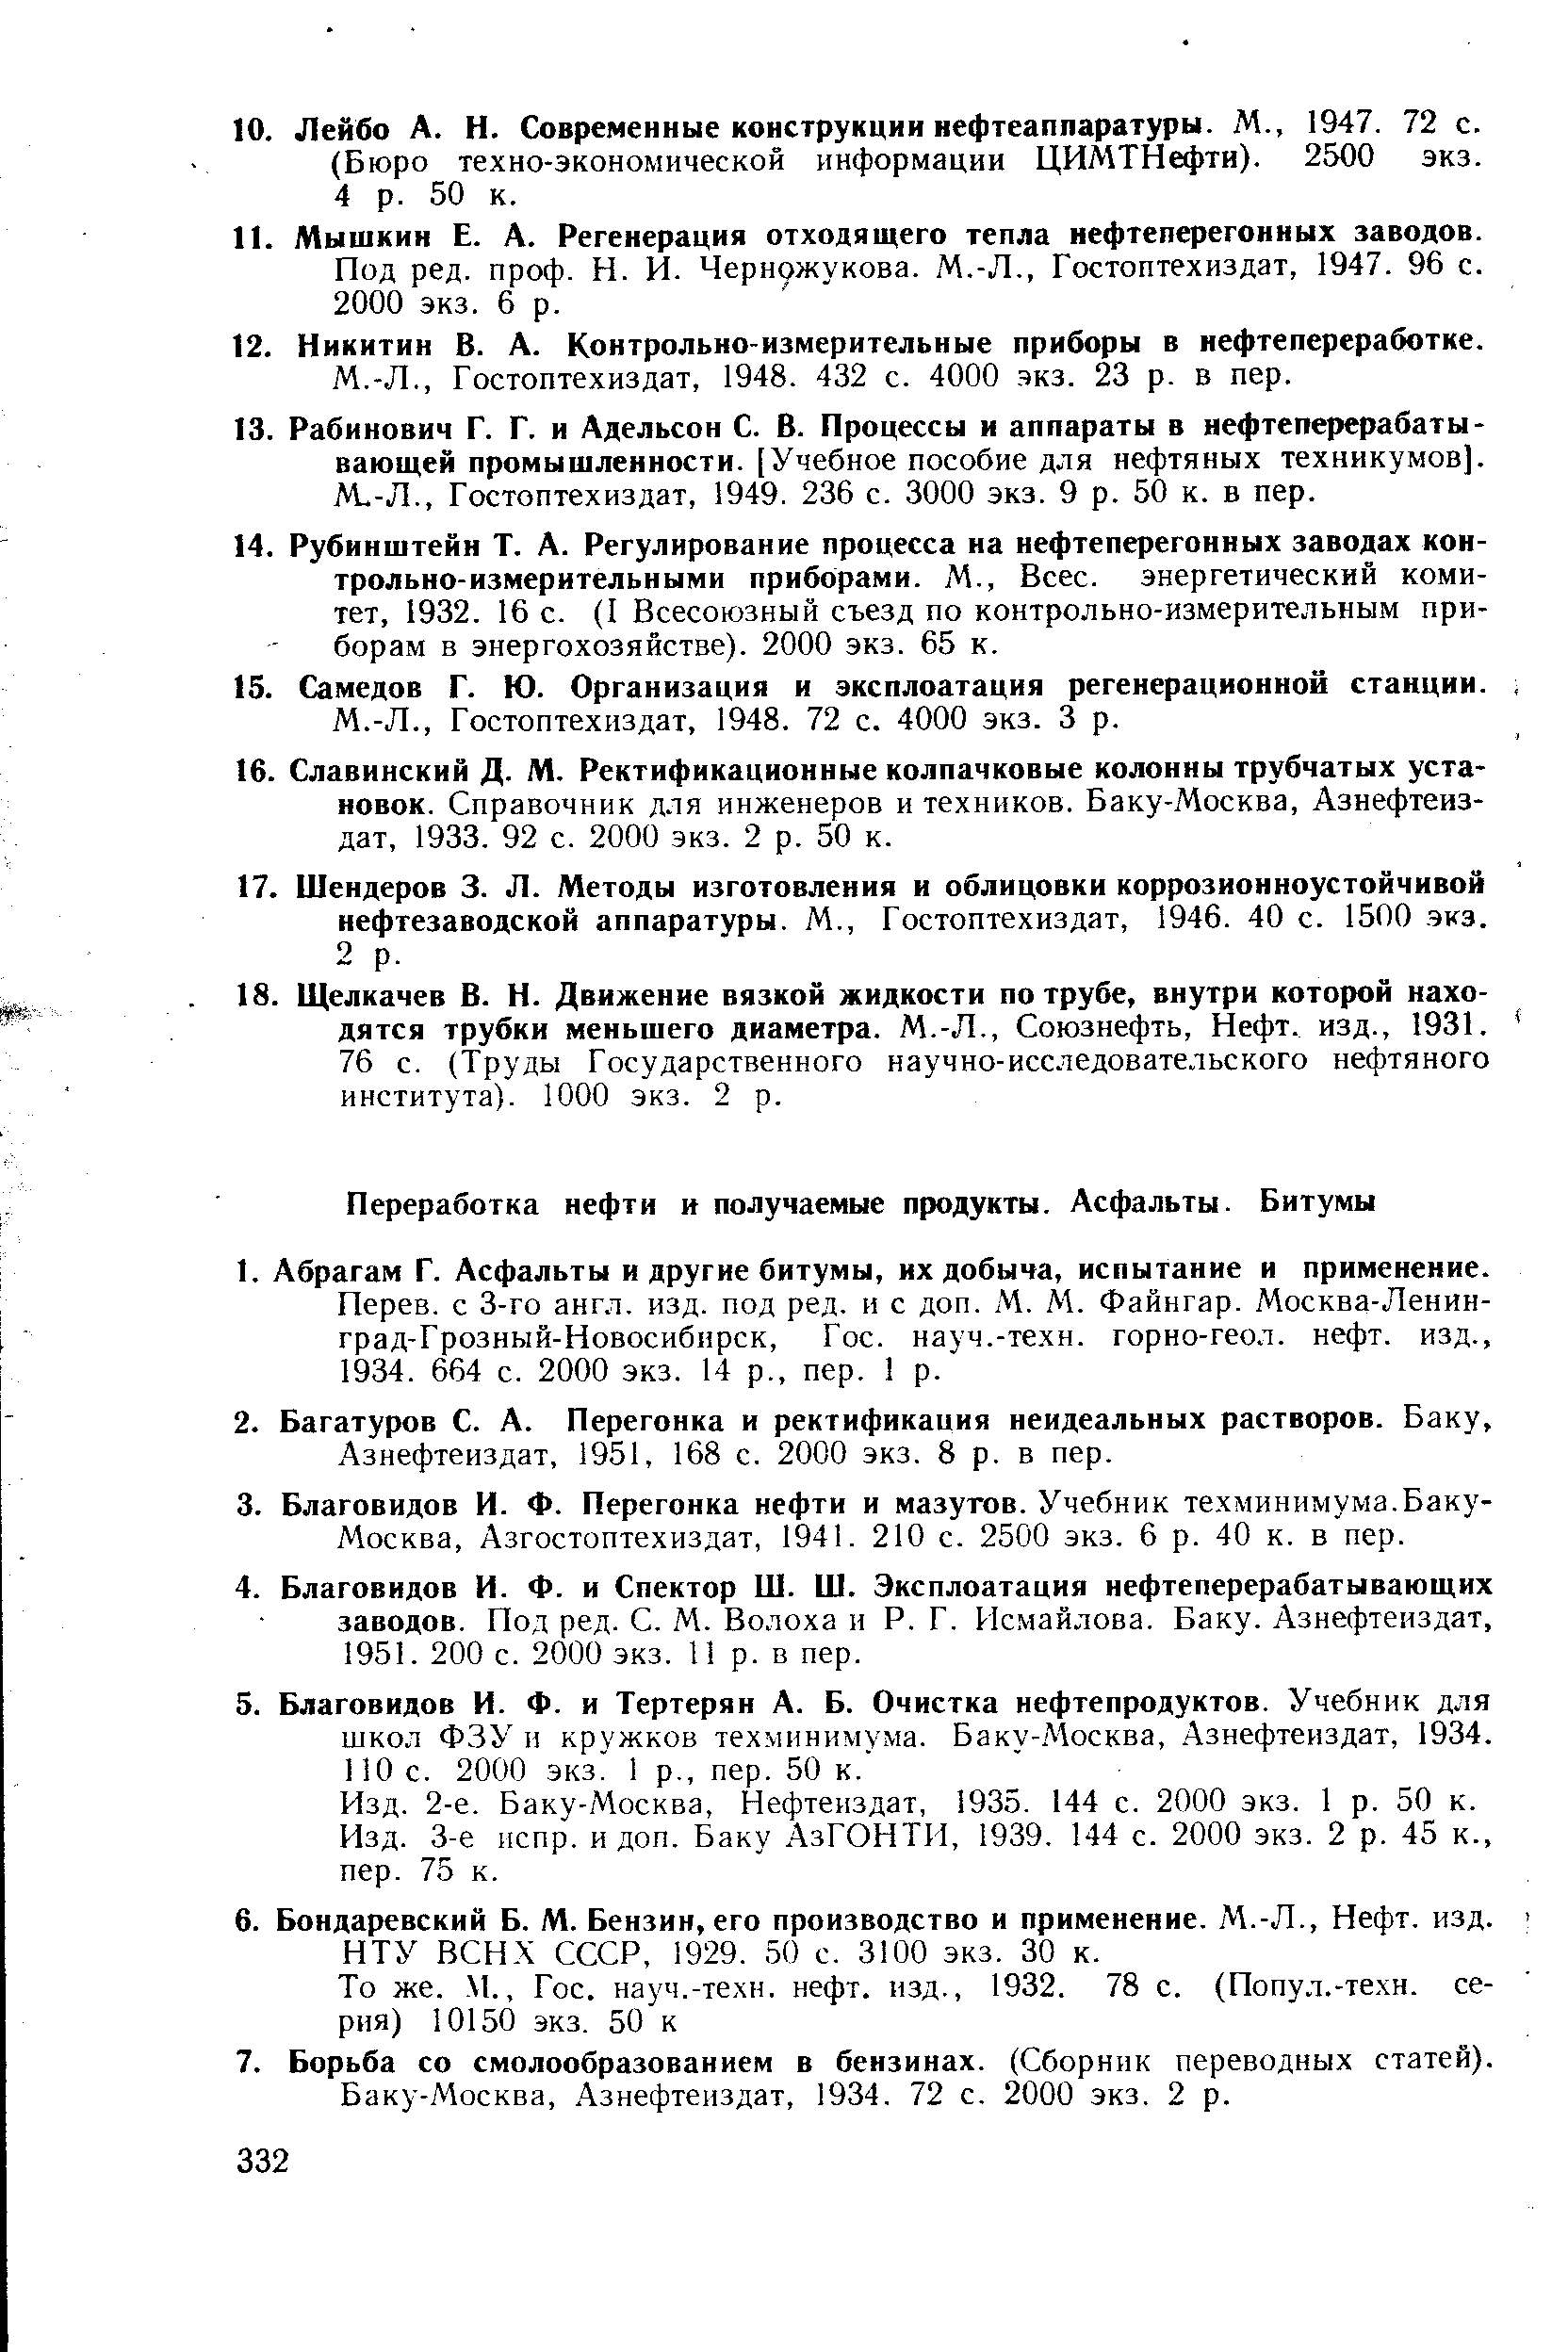 Азнефтеиздат, 1951, 168 с. 2000 экз. 8 р. в пер.